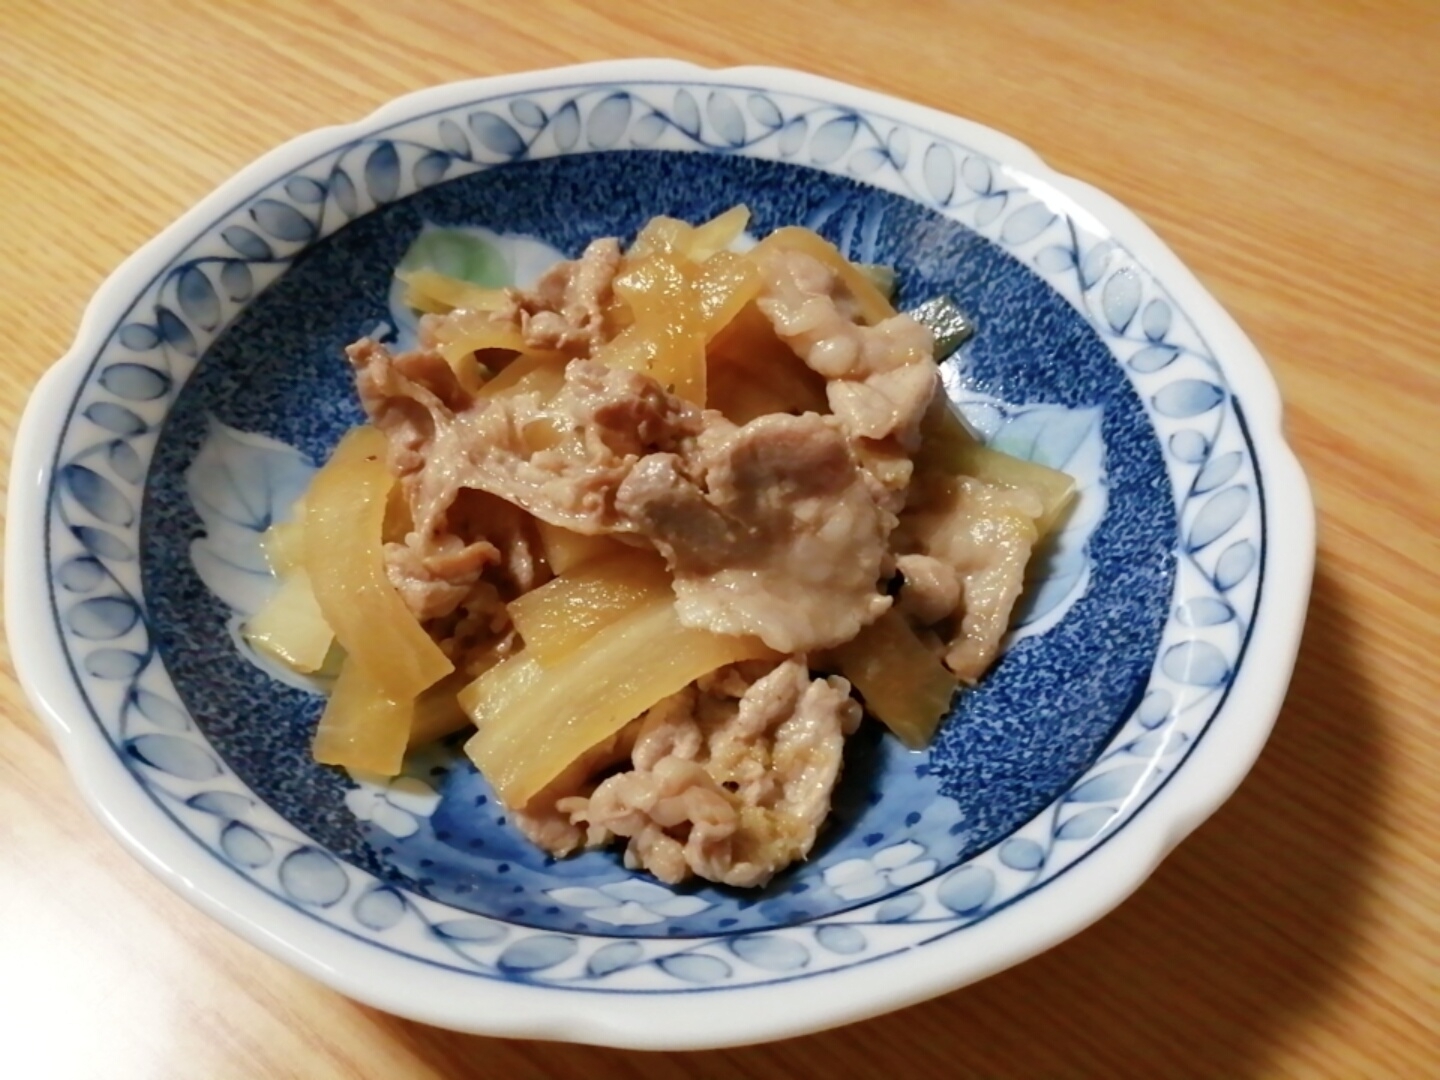 豚肉と大根の生姜風味炒め